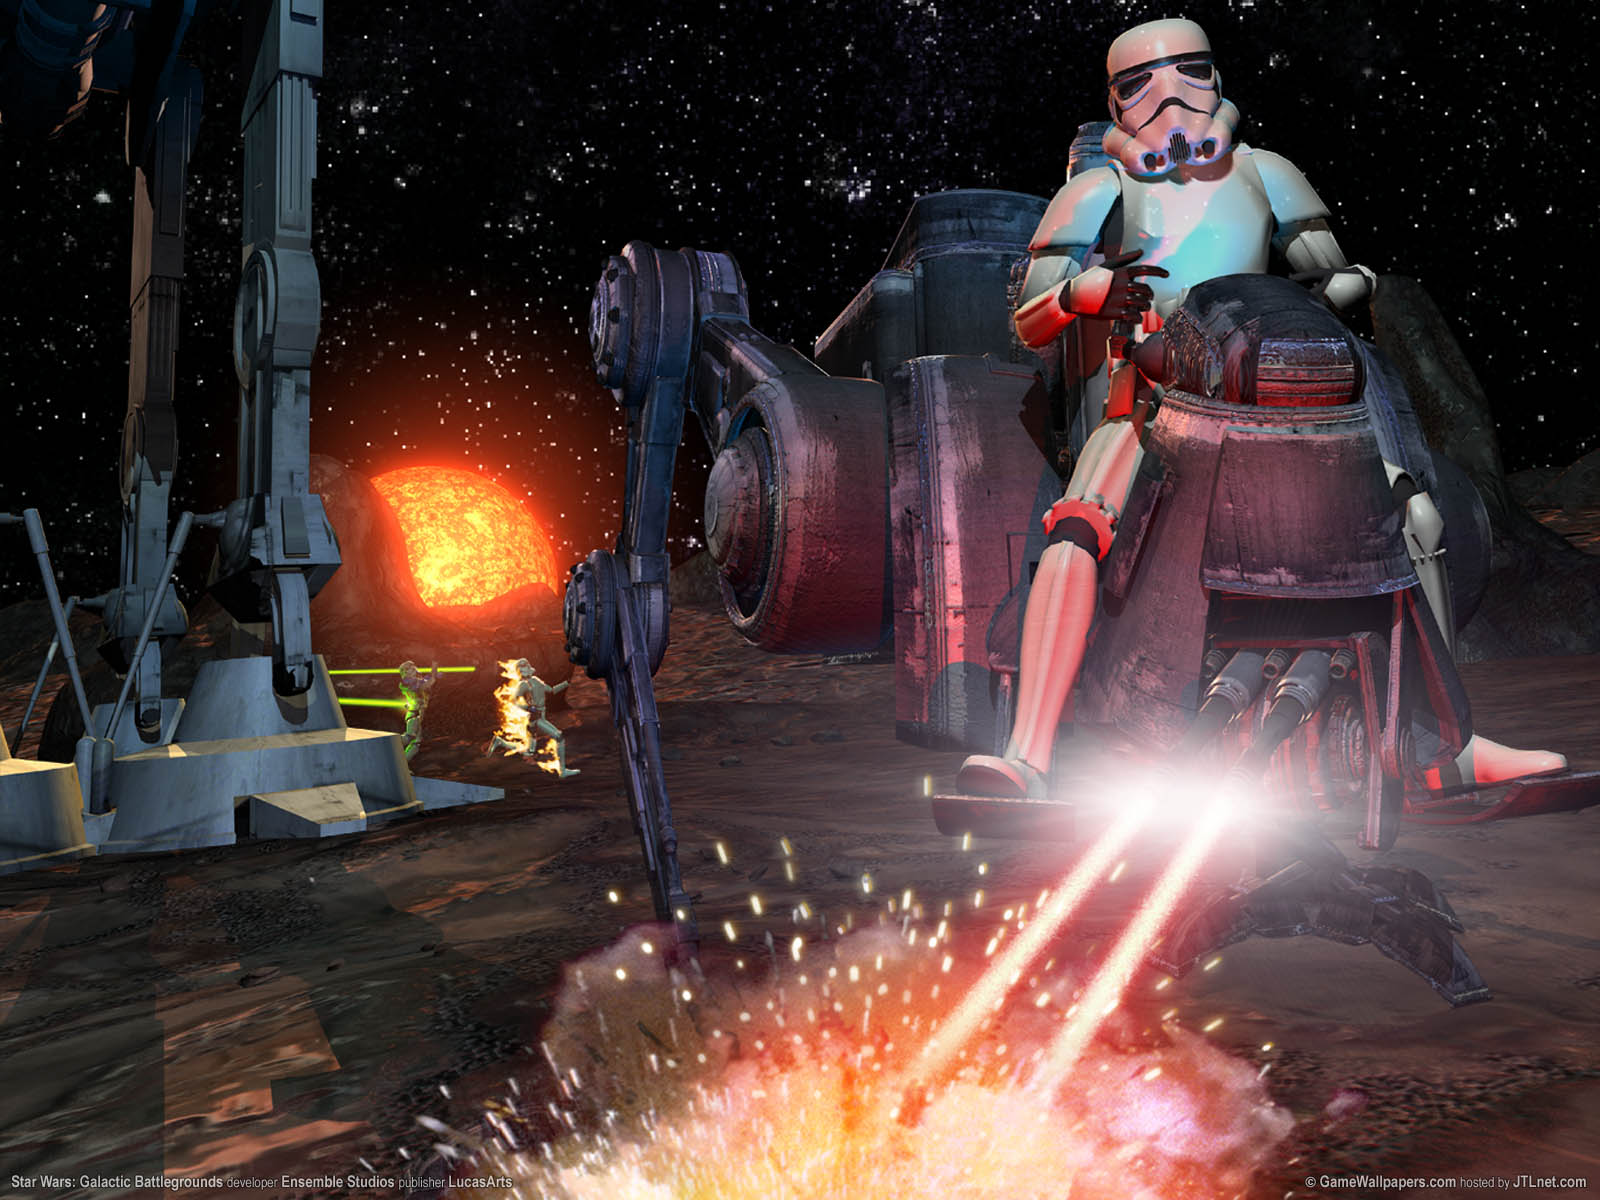 Star Wars: Galactic Battlegrounds fond d'cran 01 1600x1200